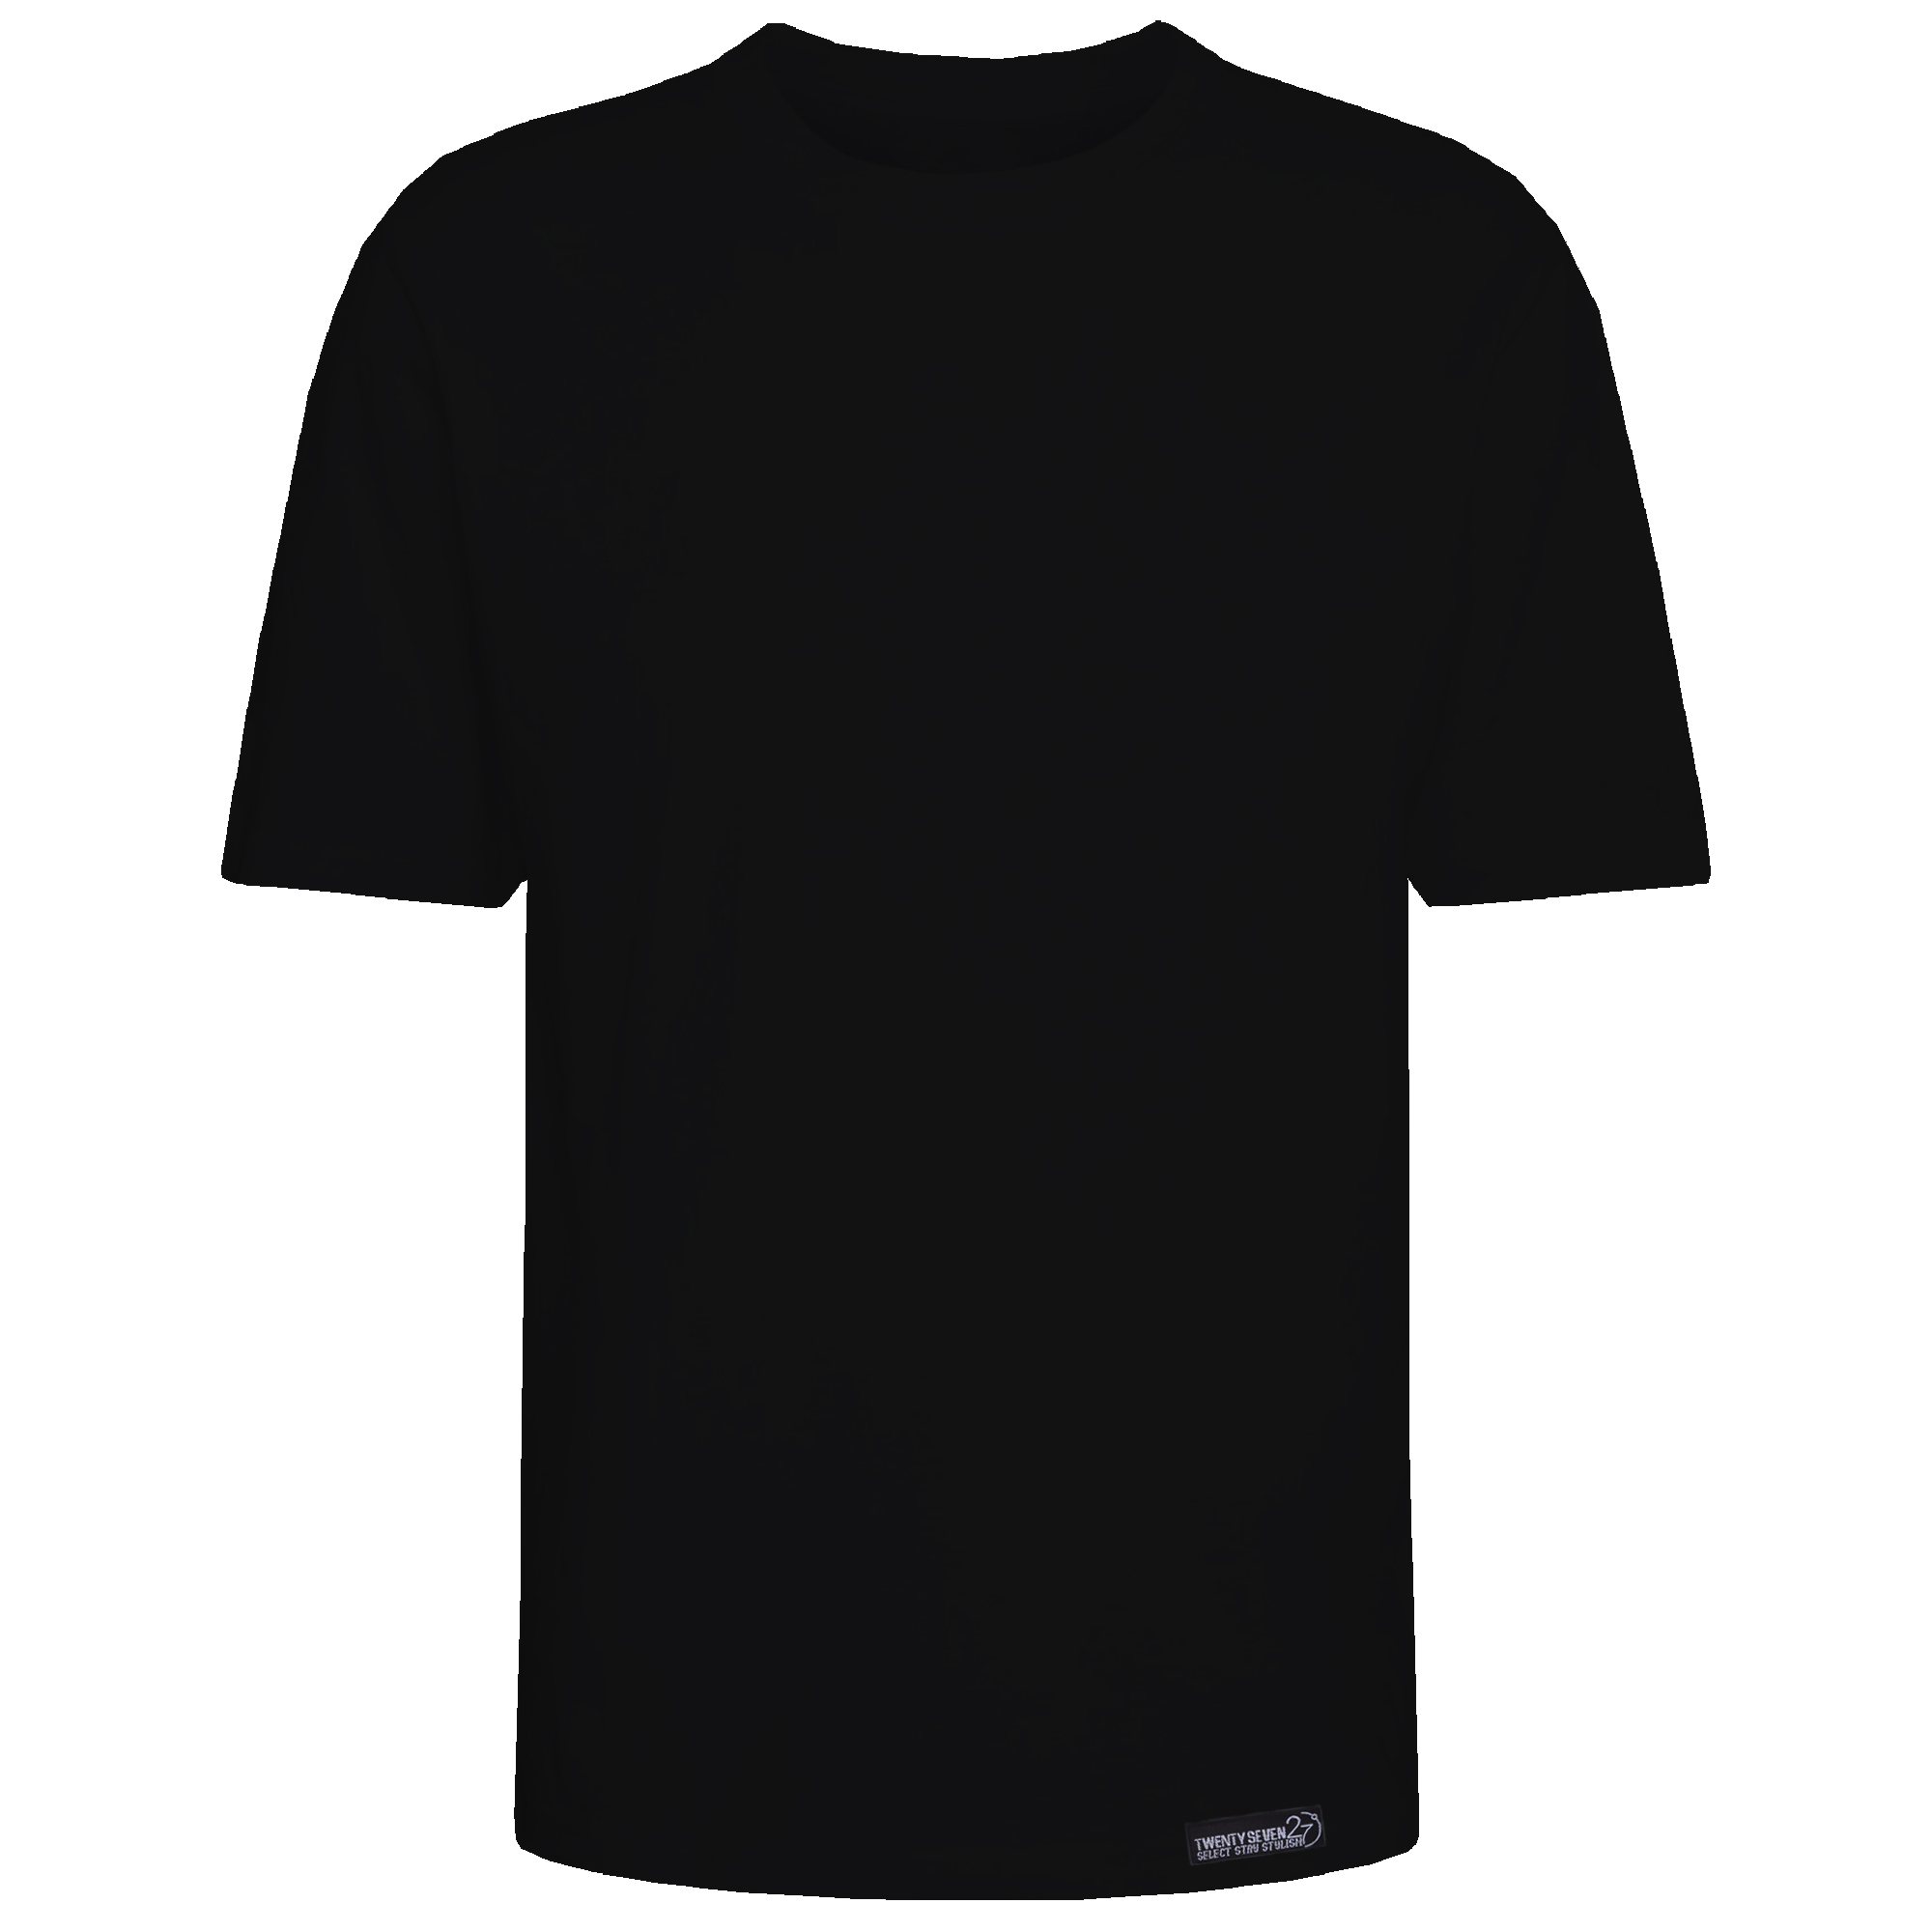 تی شرت آستین کوتاه مردانه 27 مدل simple کد KV319 رنگ مشکی -  - 2